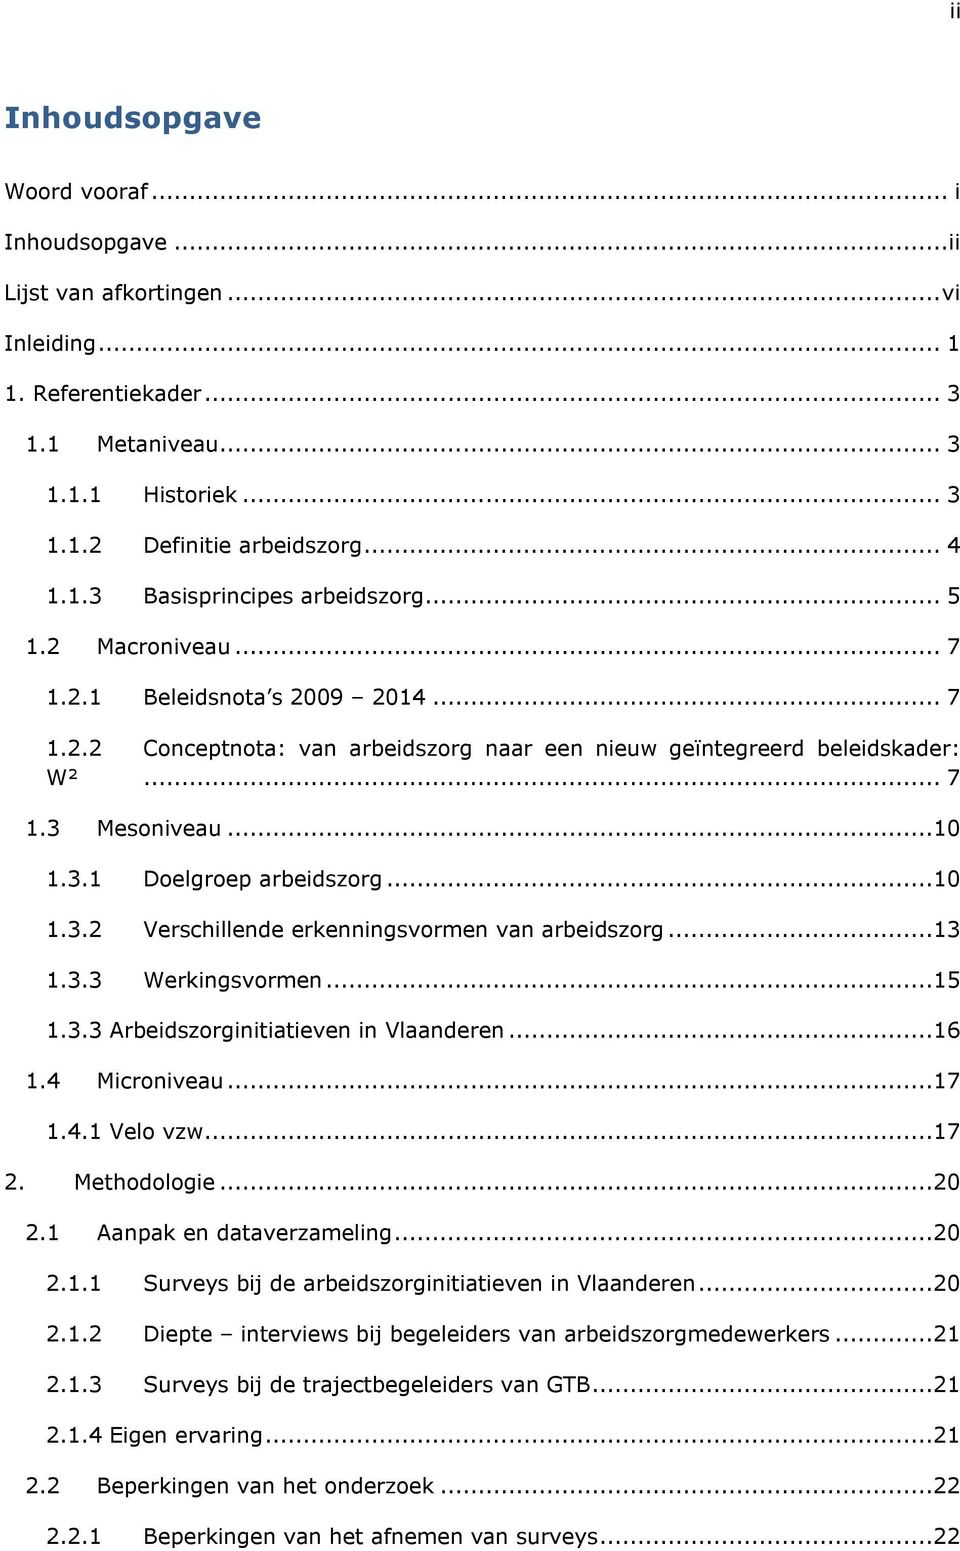 ..13 1.3.3 Werkingsvormen...15 1.3.3 Arbeidszorginitiatieven in Vlaanderen...16 1.4 Microniveau...17 1.4.1 Velo vzw...17 2. Methodologie...20 2.1 Aanpak en dataverzameling...20 2.1.1 Surveys bij de arbeidszorginitiatieven in Vlaanderen.